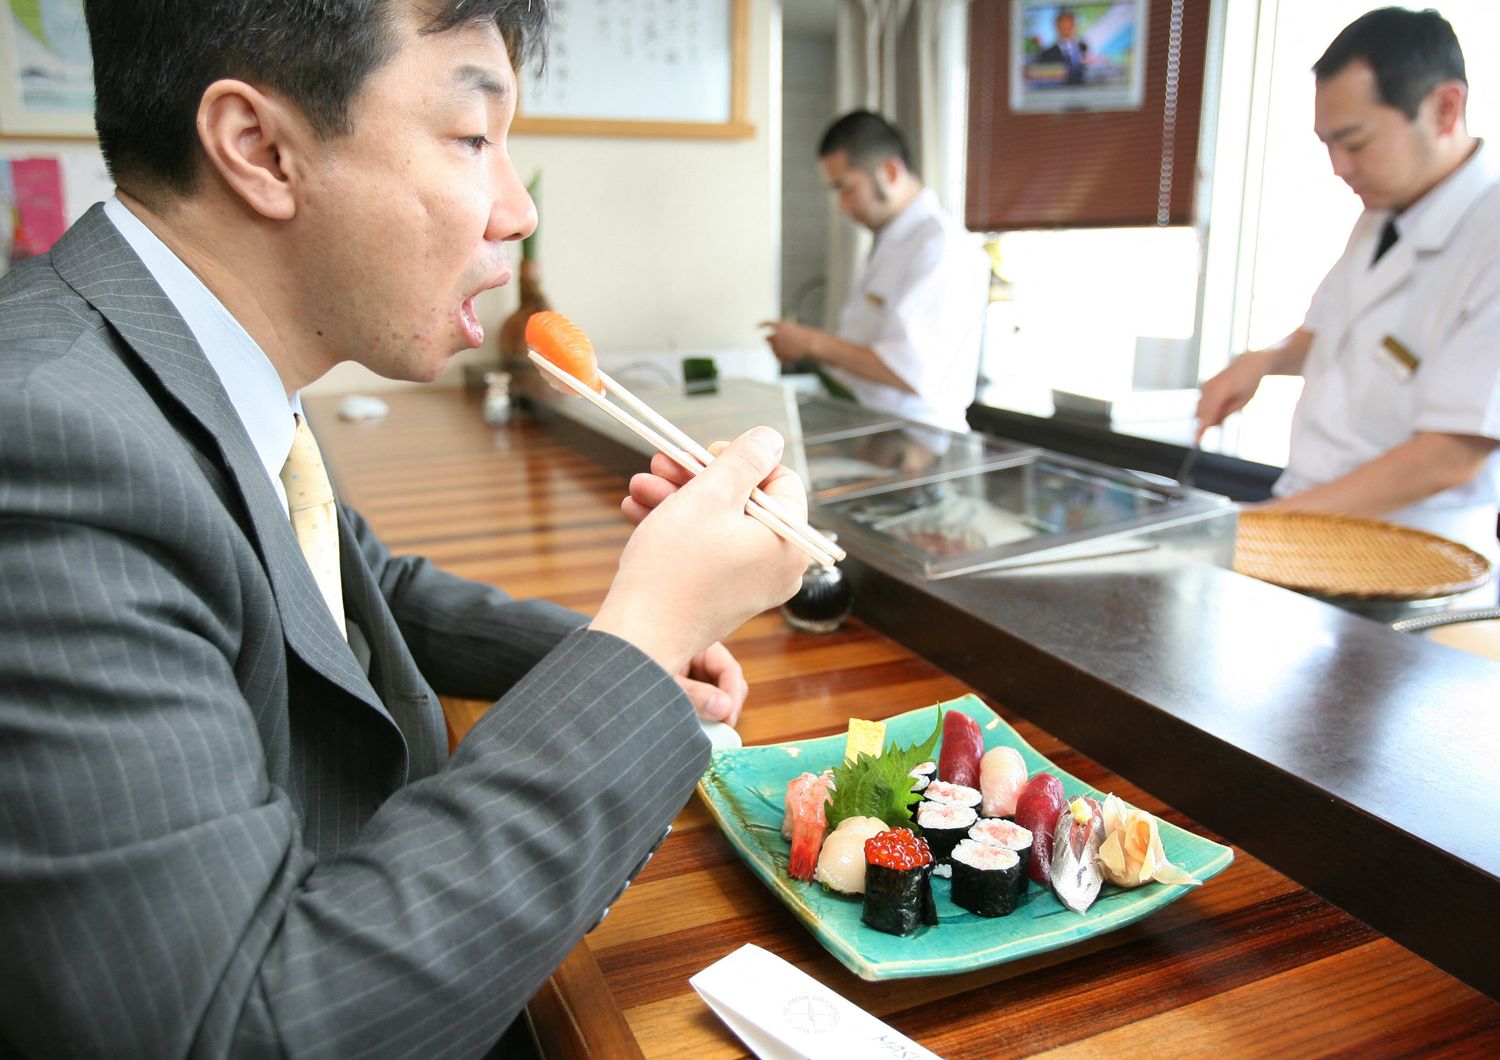 ultima moda social Giappone sputare nel piatto del vicino al ristorante&nbsp;